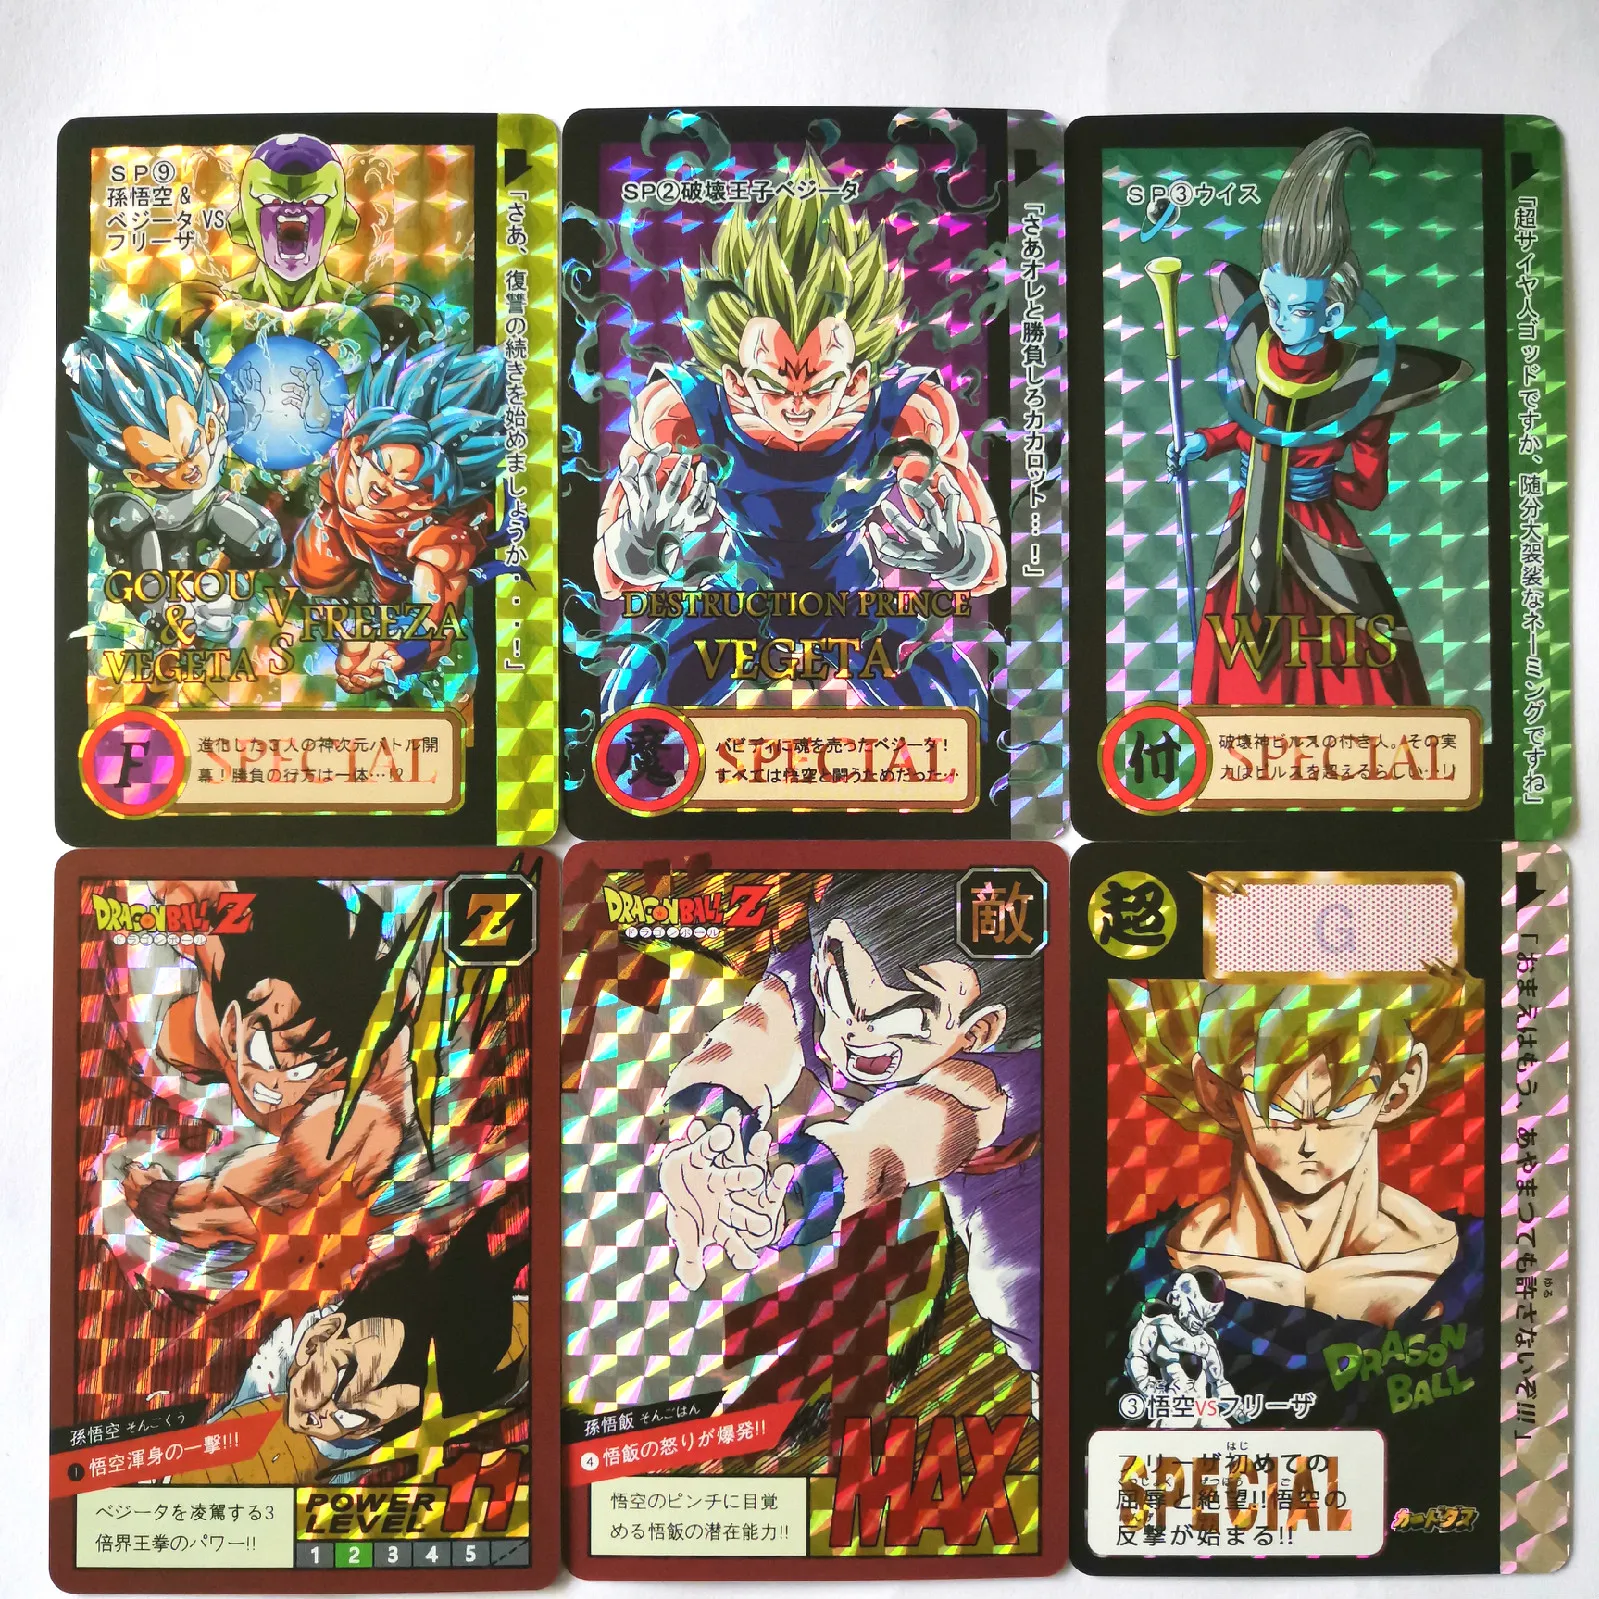 41 шт./компл. супер Dragon Ball-Z лимит прорыв герои битва карты Ultra Instinct Гоку Супер игровая коллекция карт